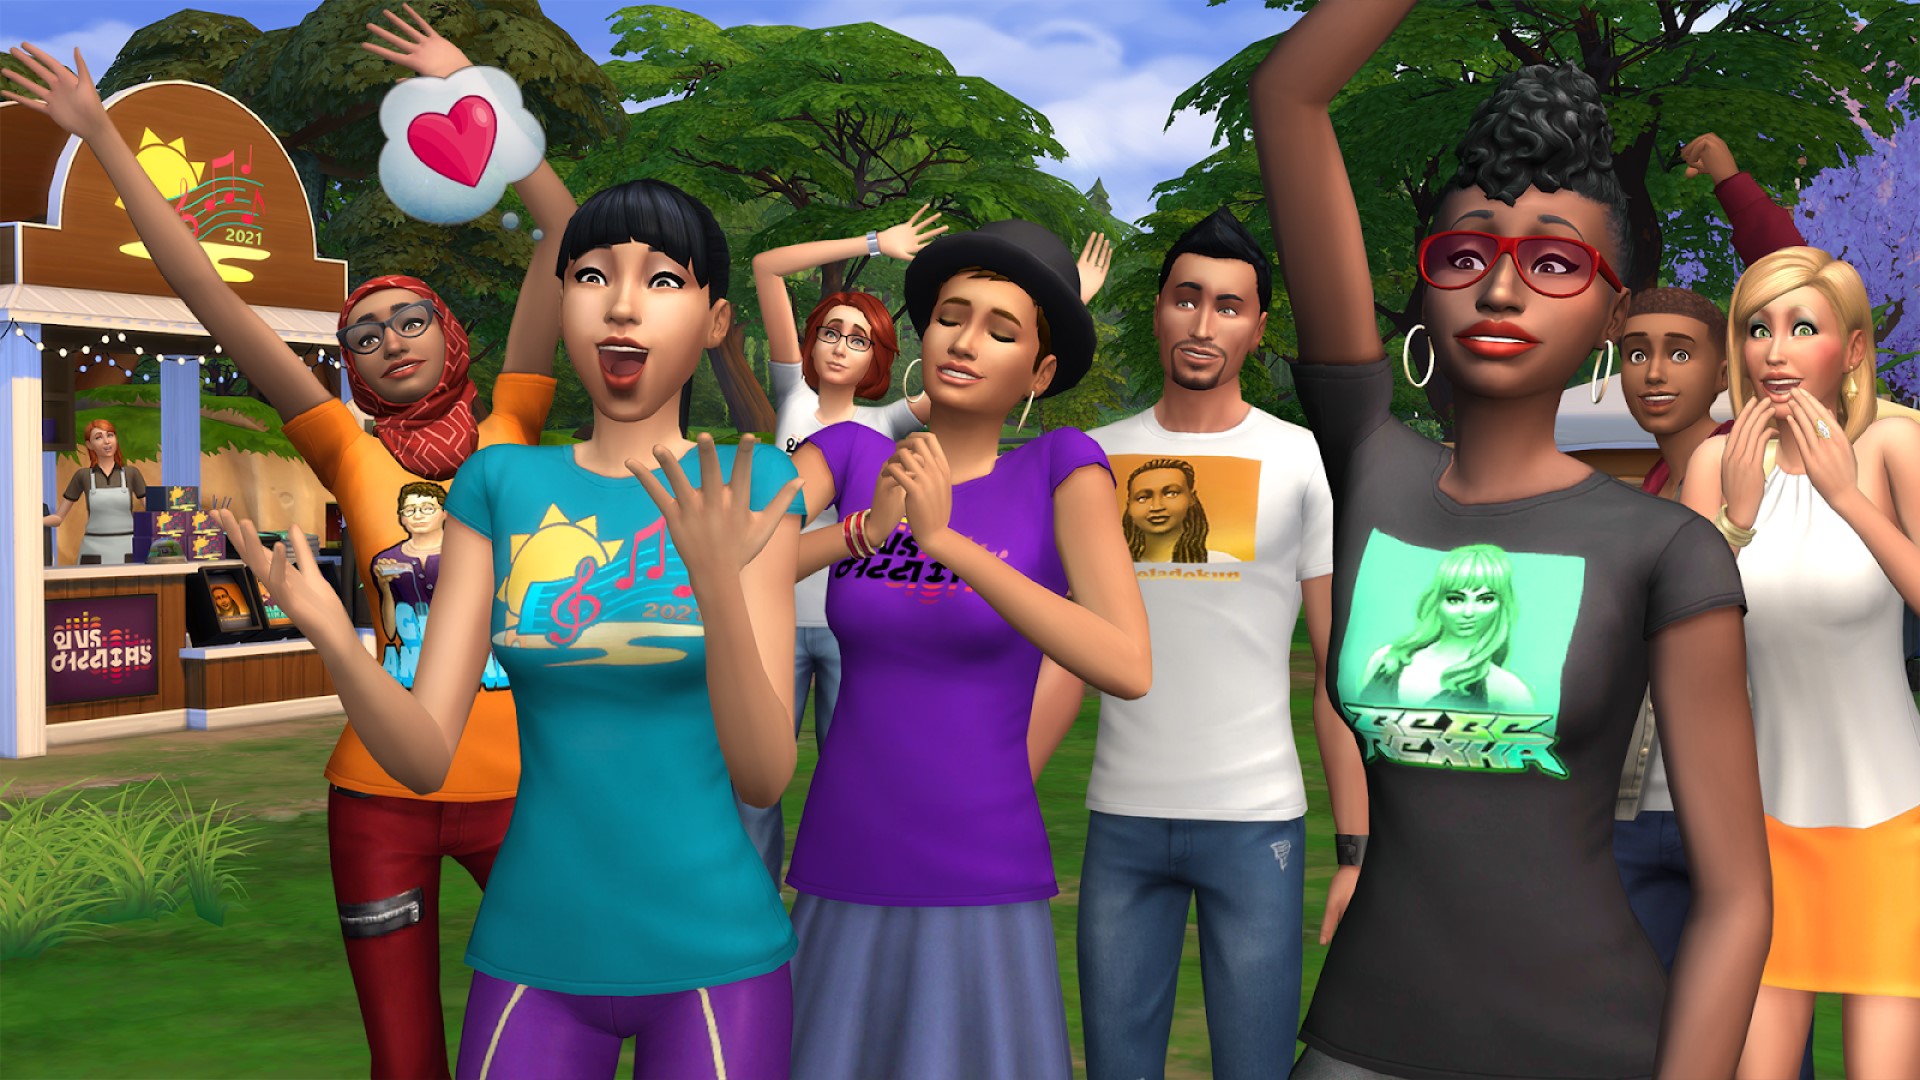 Το The Sims 4 θα φιλοξενήσει ένα φεστιβάλ μουσικής με την Bebe Rexha την επόμενη εβδομάδα